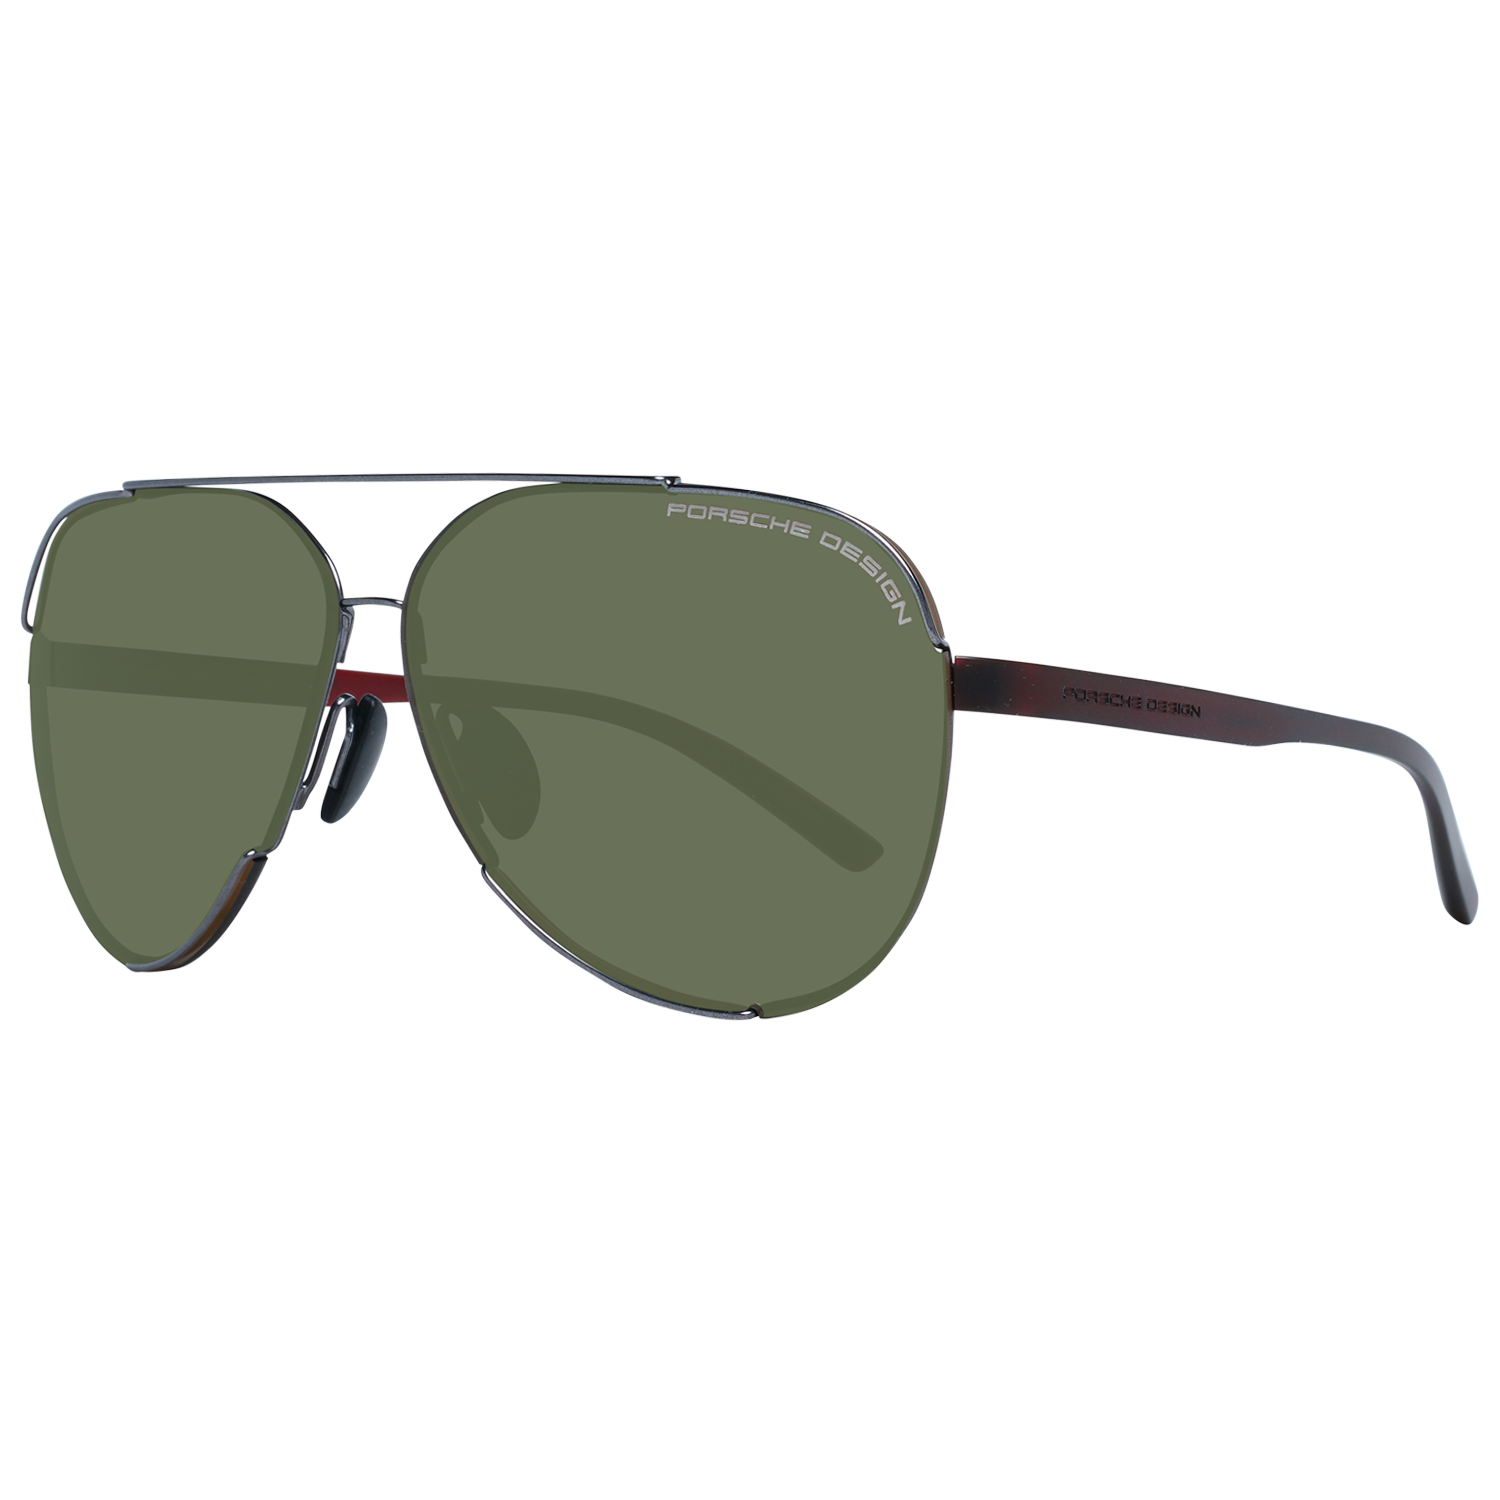 Porsche Design Sunglasses Porsche Design Sunglasses P8682 B 64 Eyeglasses Eyewear UK USA Australia 